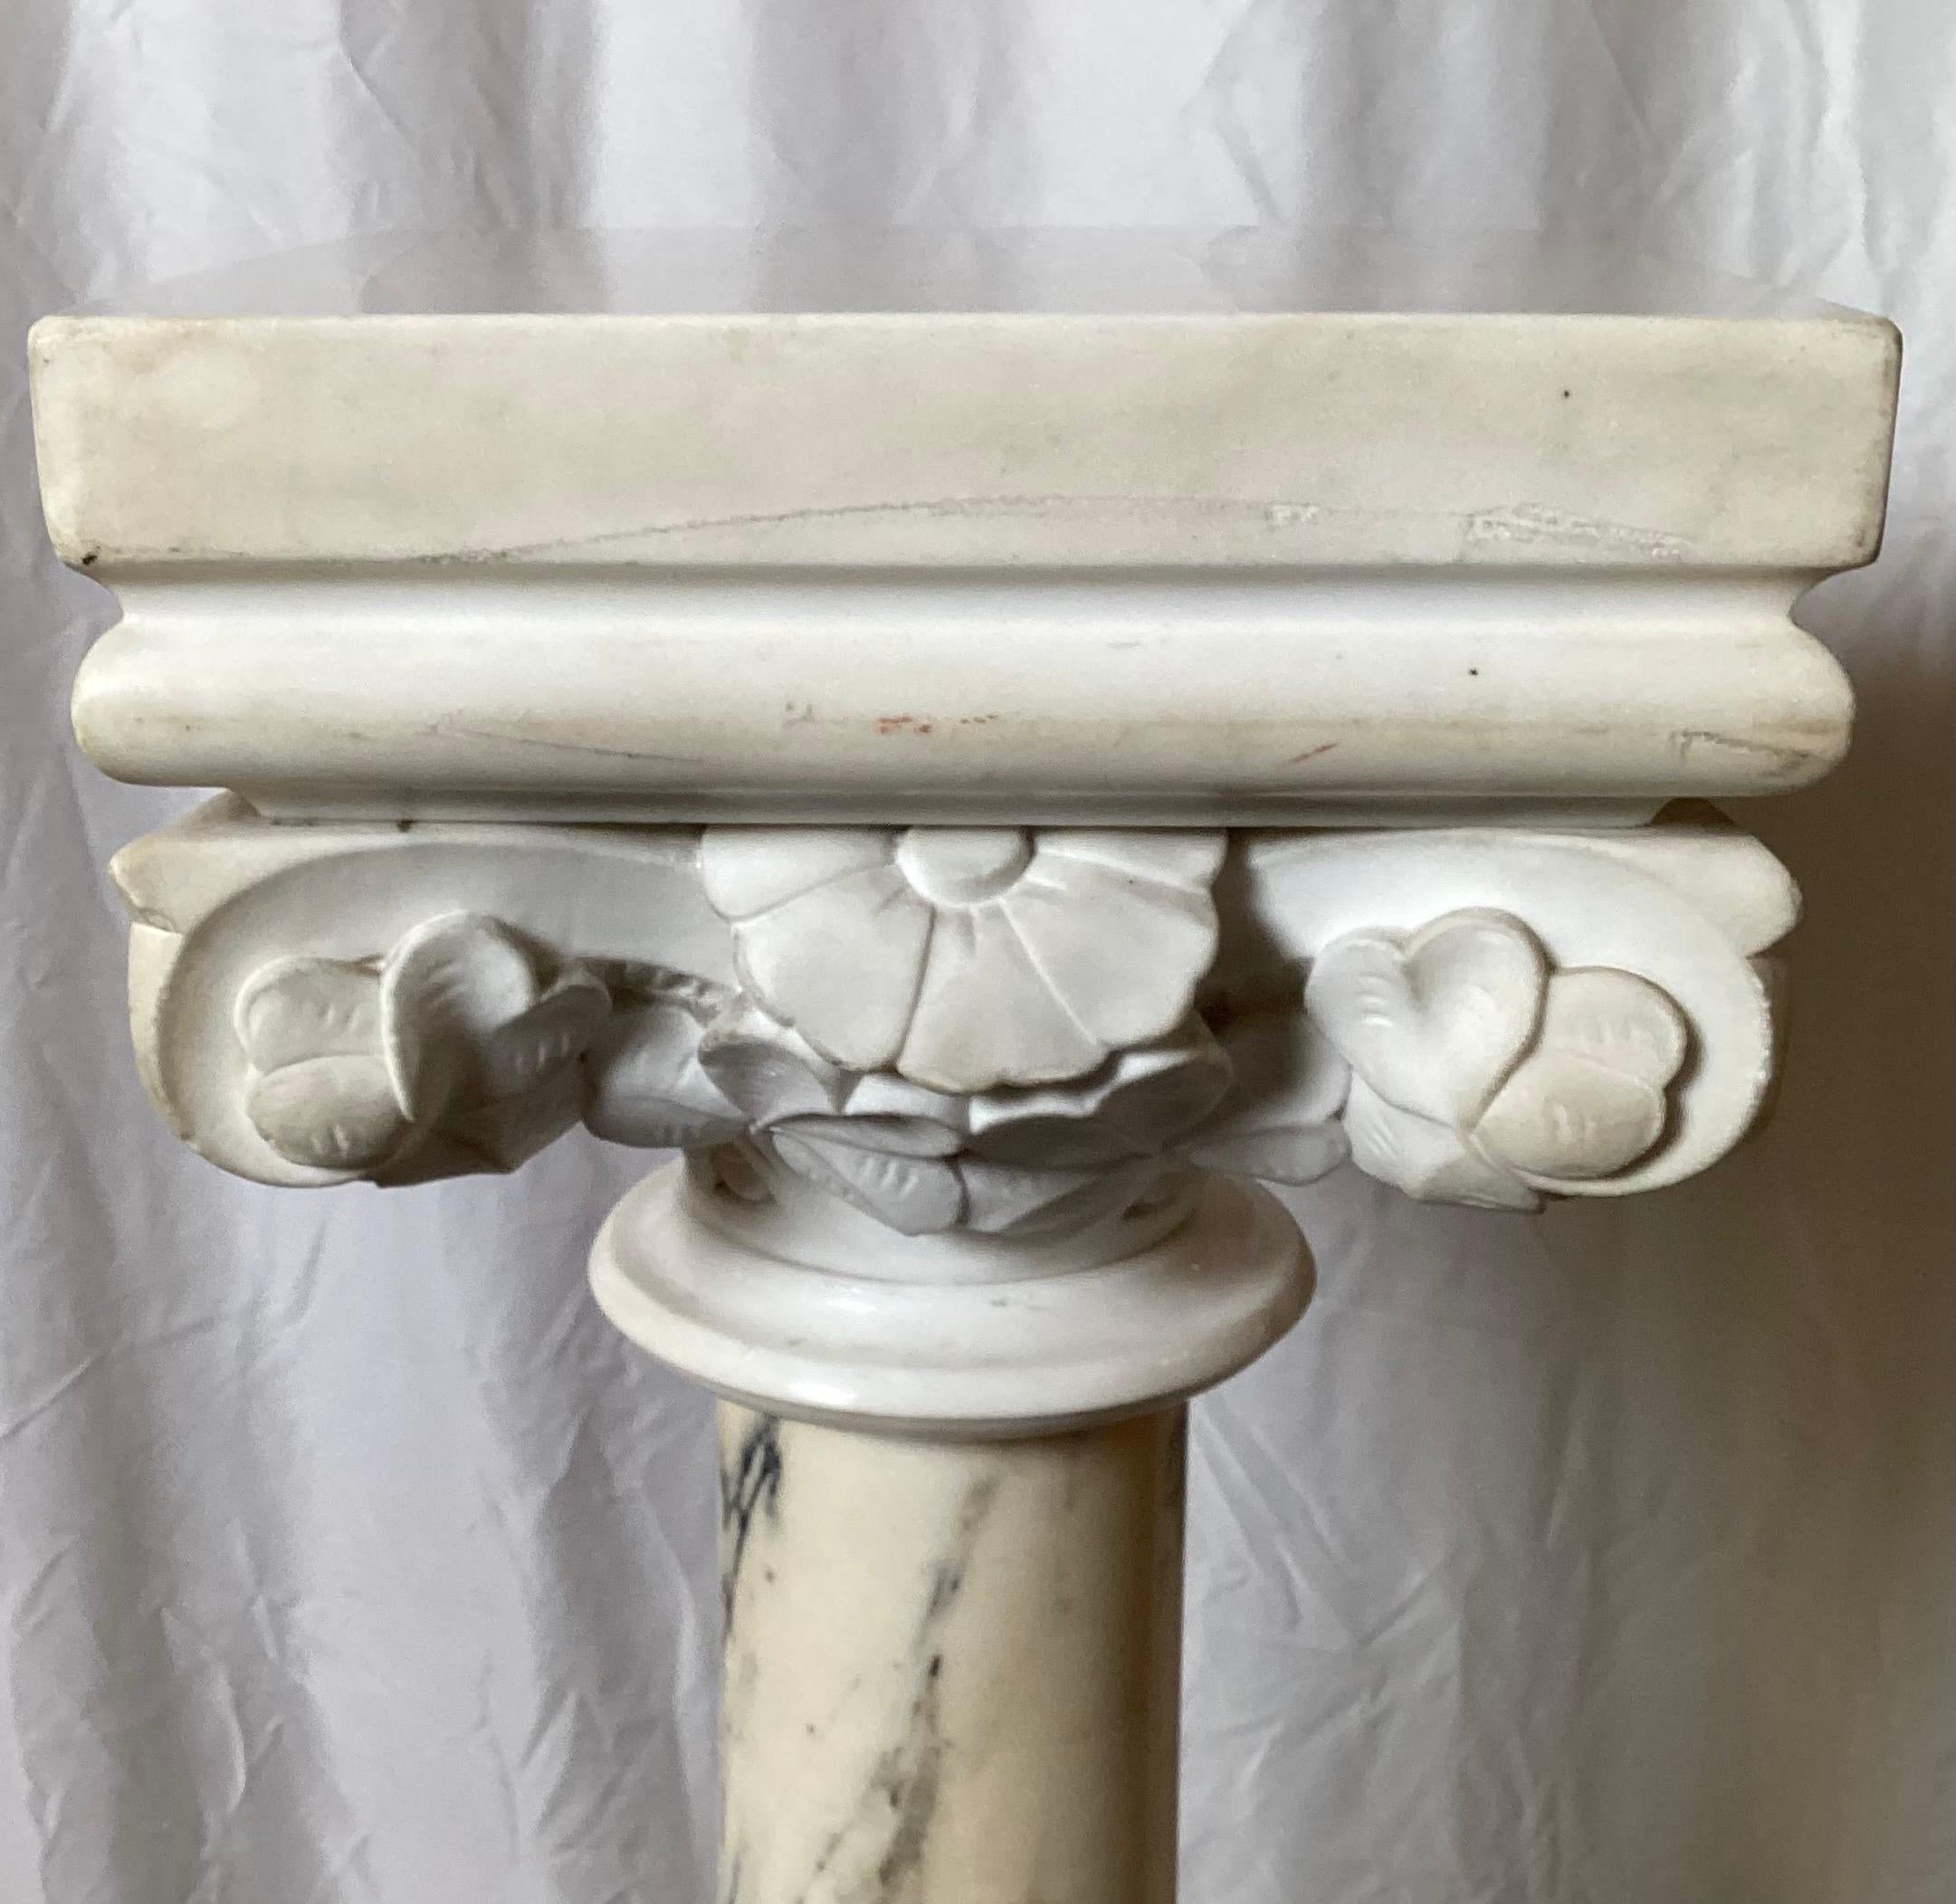 Piédestal néoclassique en marbre de Carrare sculpté à la main, avec plateau et base en marbre blanc.  Le plateau feuillagé surmonte une colonne centrale veinée de gris et de noir, sur une base piédestale carrée. Le plateau se détache du piédestal en